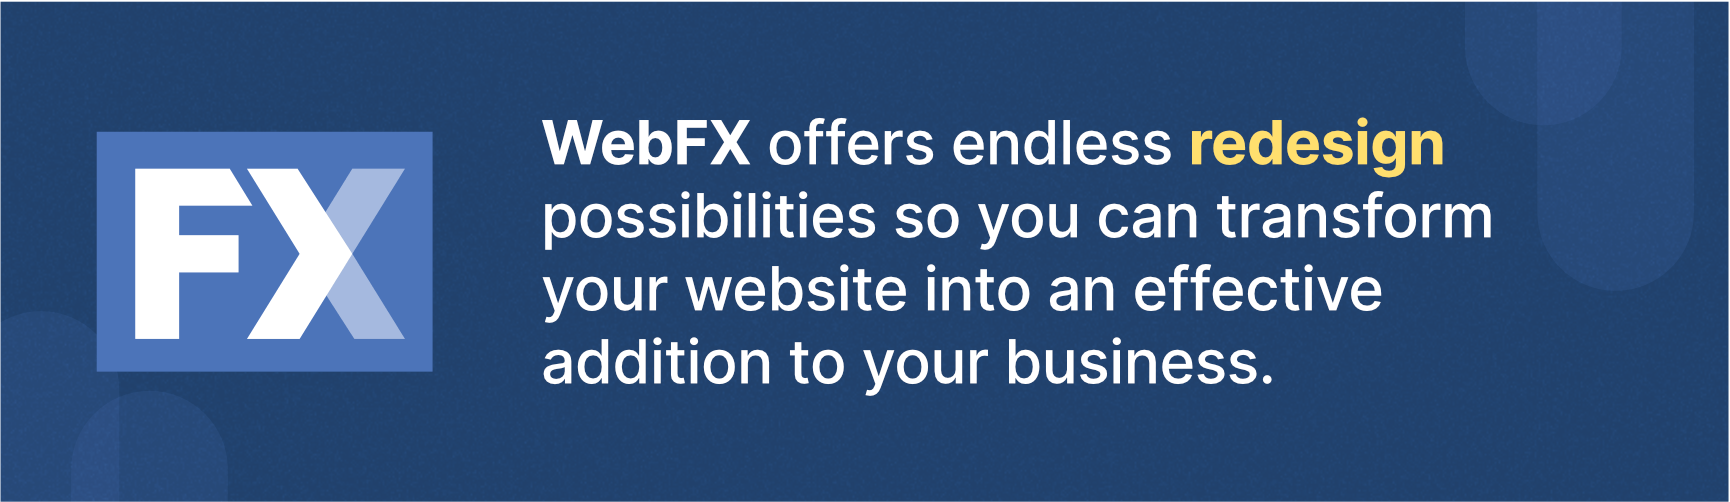 WebFX重新设计服务为帮助你的网站创收提供了很多可能性